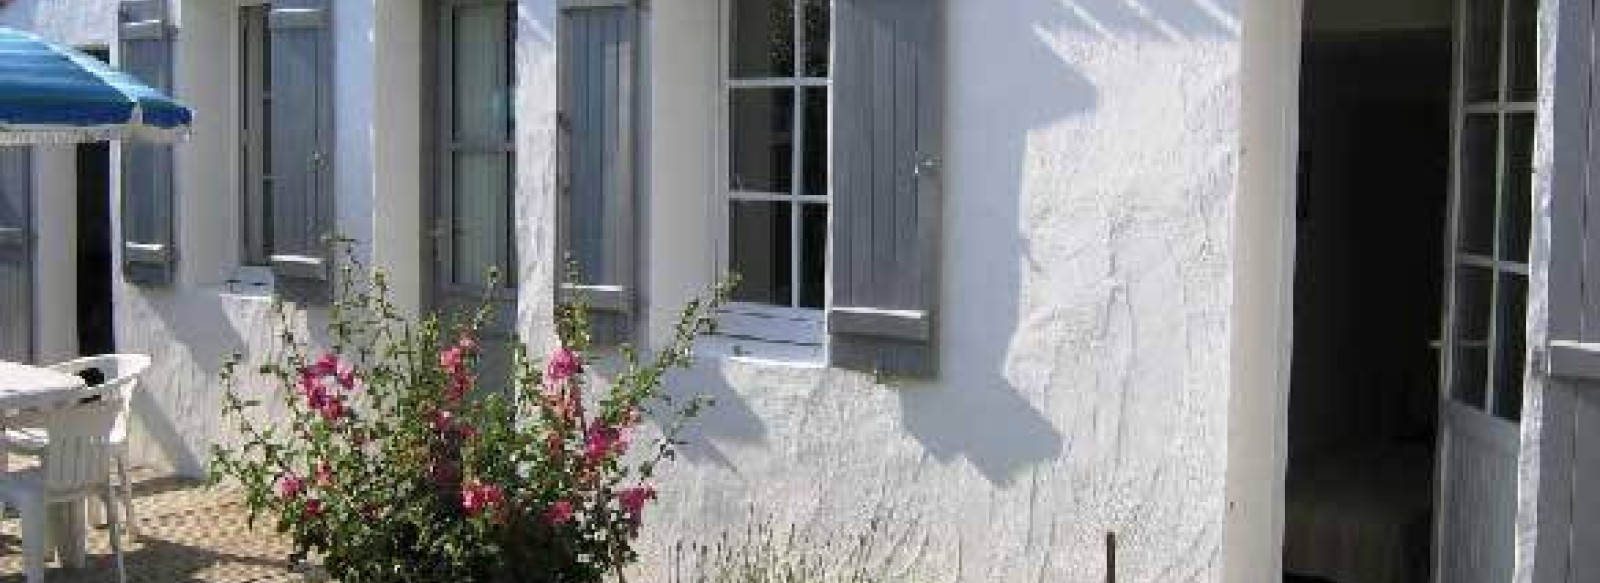 Maison proche de la plage de la Martiniere sur l'ile de Noirmoutier